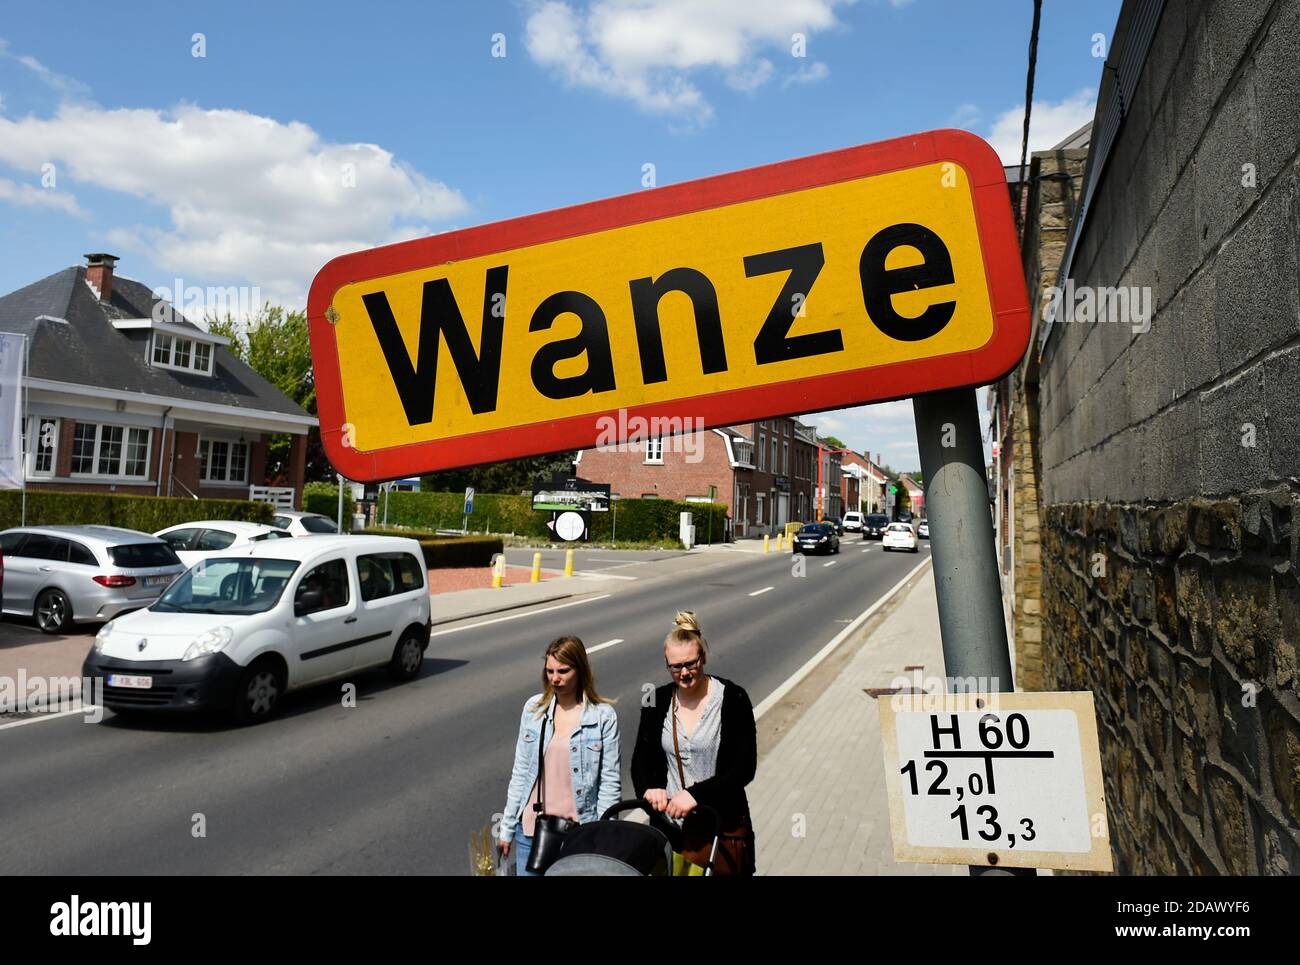 L'illustrazione mostra il nome del comune di Wanze su un cartello stradale, giovedì 03 maggio 2018. BELGA FOTO JOHN THYS Foto Stock